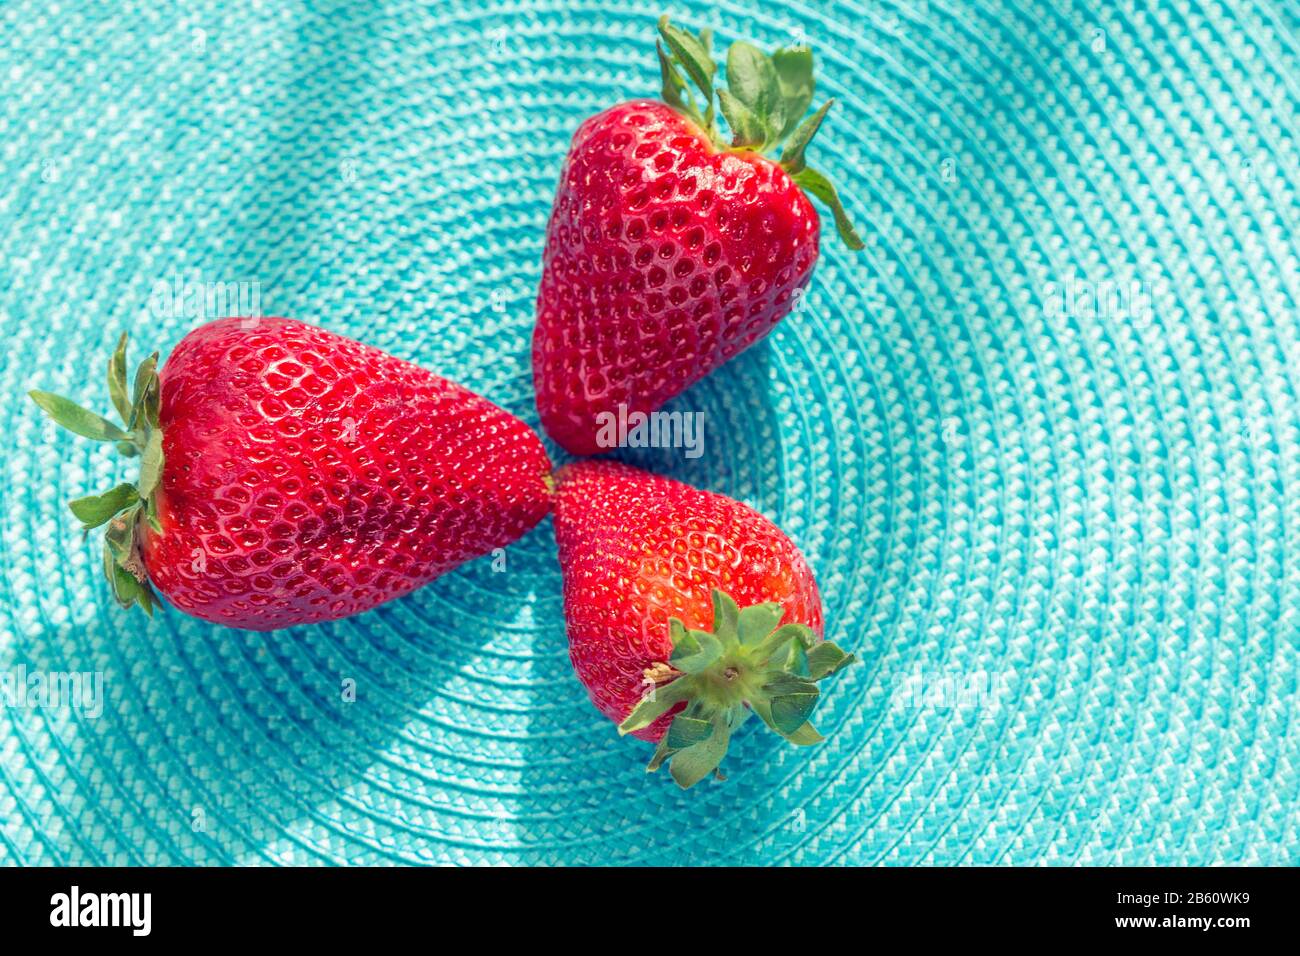 gros plan de fraises rouges rafraîchissantes sur une surface plane bleue Banque D'Images